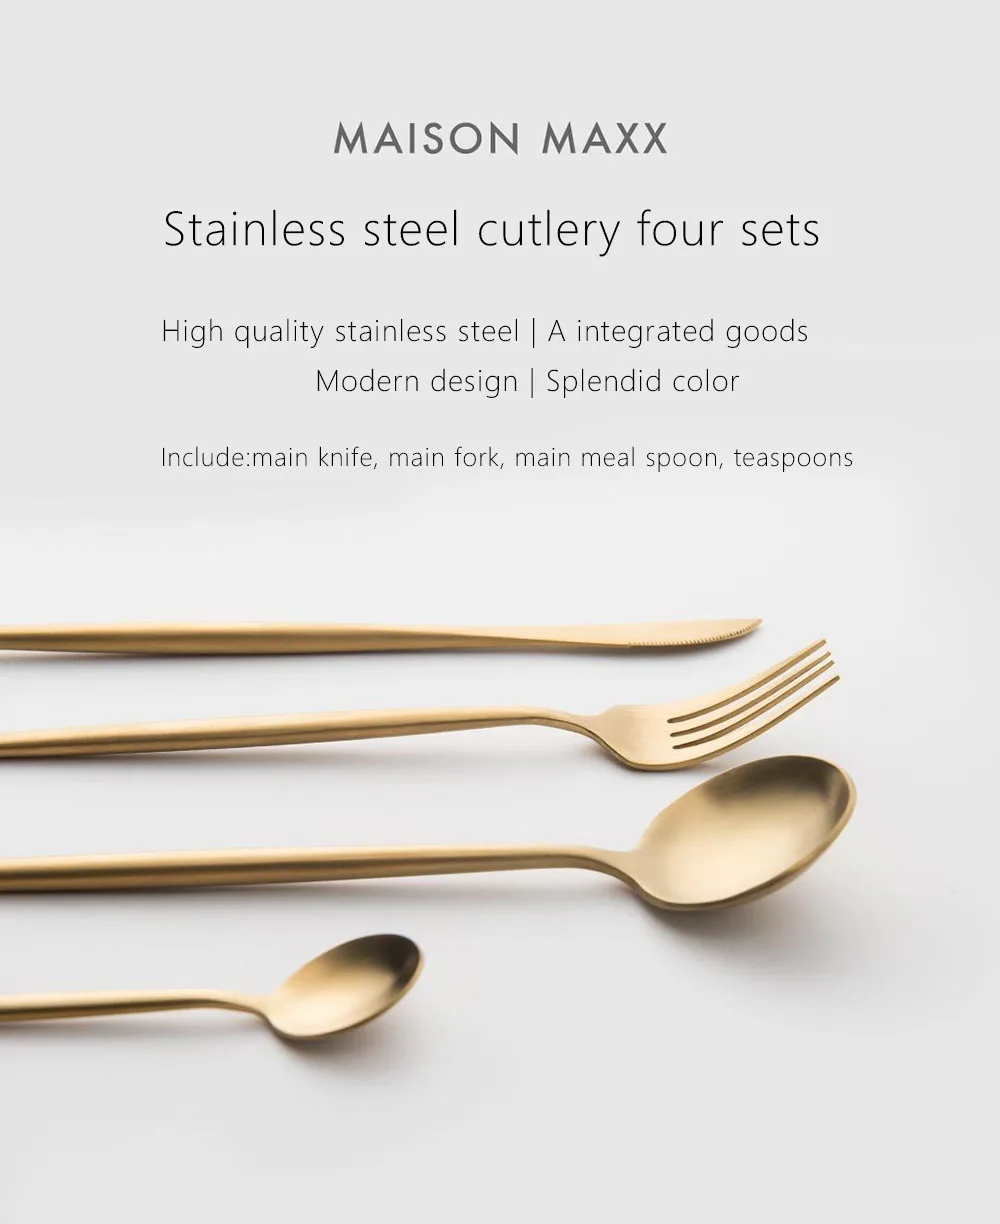 Xiaomi чистый цвет набор столовых приборов Maision Maxx ложка, вилка, нож, чайная ложка 4 шт. высокого качества из нержавеющей стали